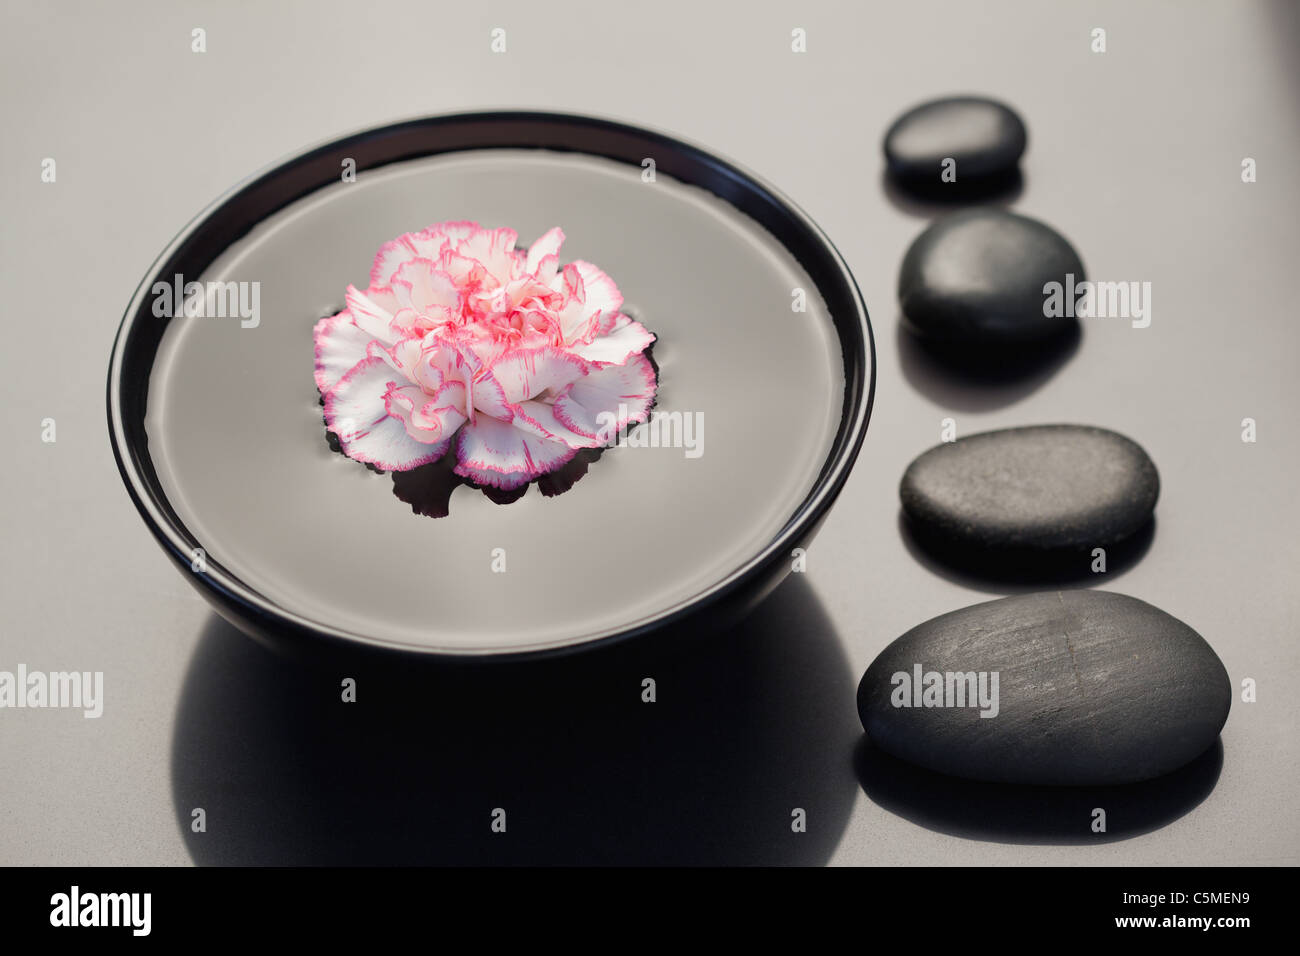 Oeillet rose et blanc flottant dans un bol noir avec pierres noires alignées sur le côté Banque D'Images